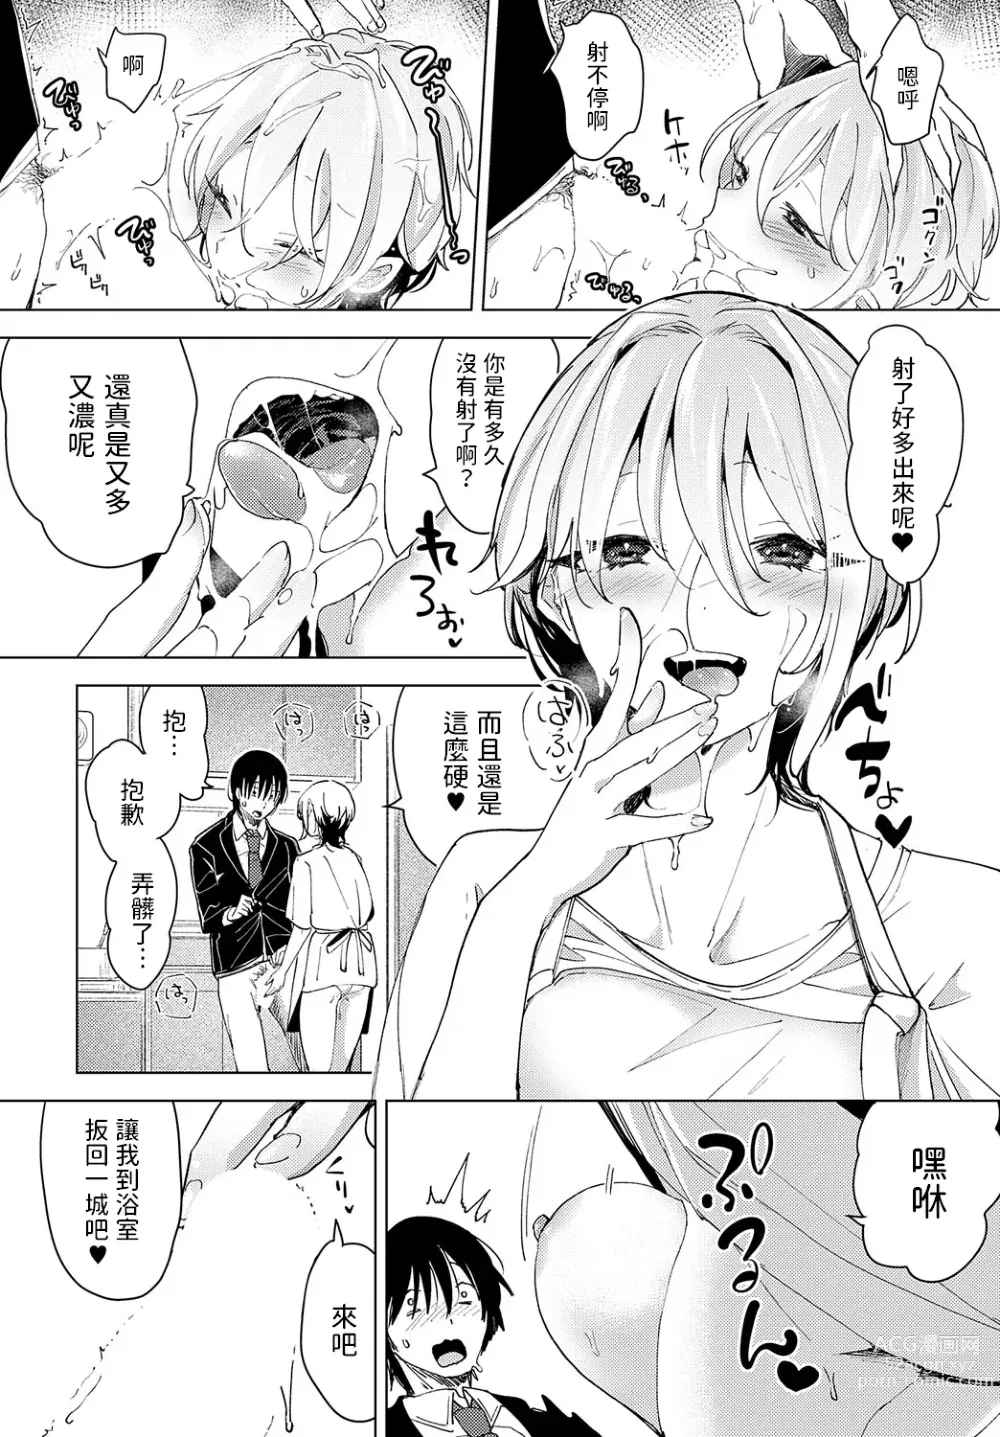 Page 18 of manga Tsuru no Ongaeshi